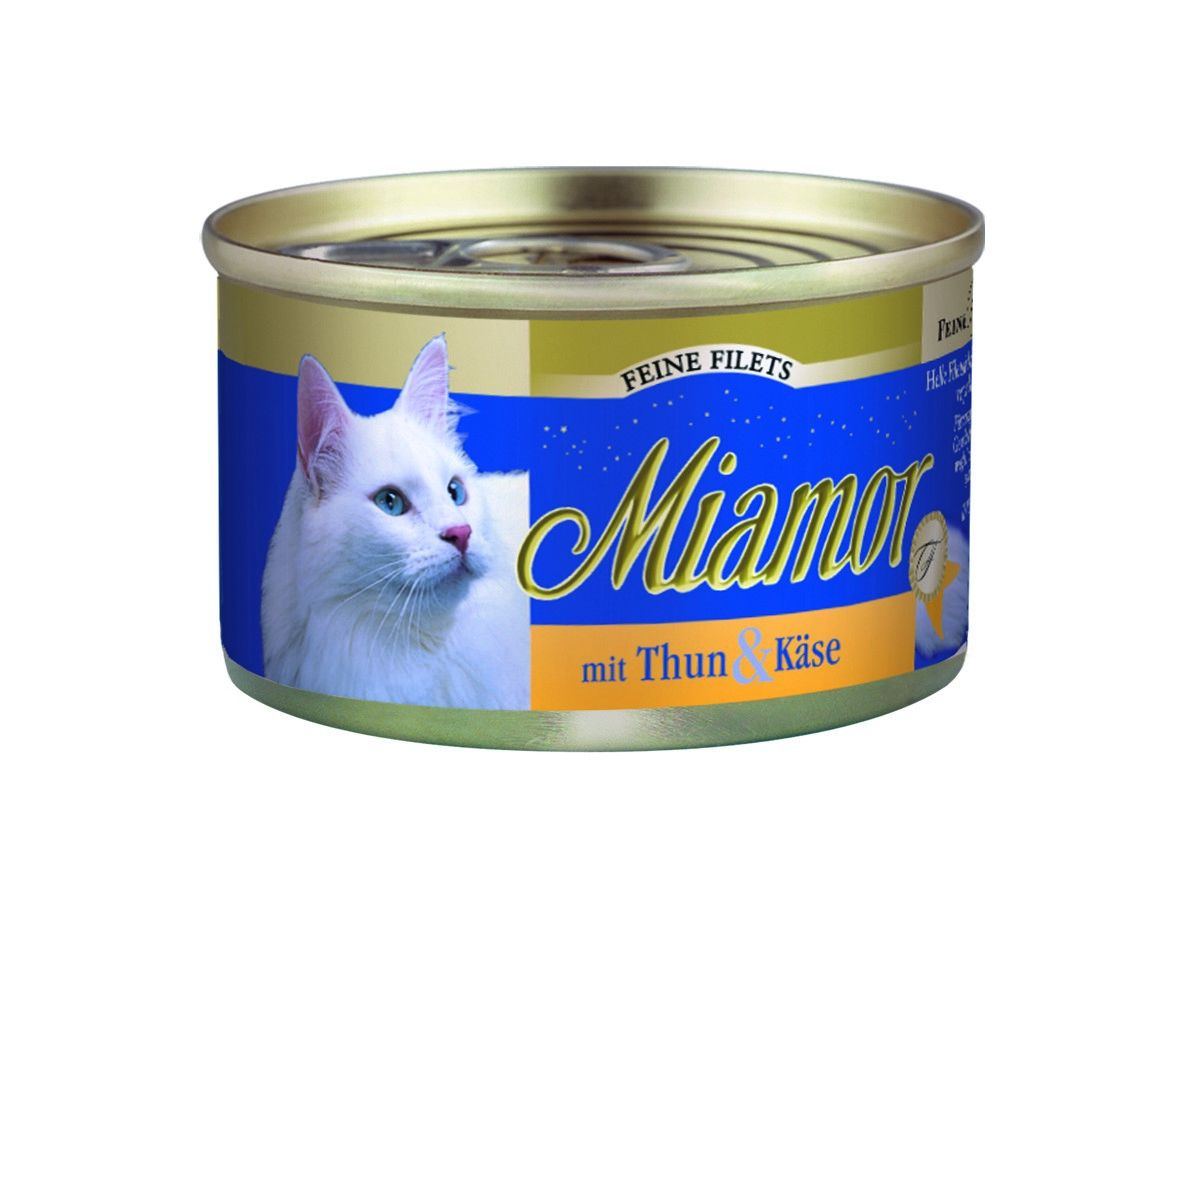 Miamor Cat Filet konzerva tuňák+sýr v želé 100g Finnern Miamor